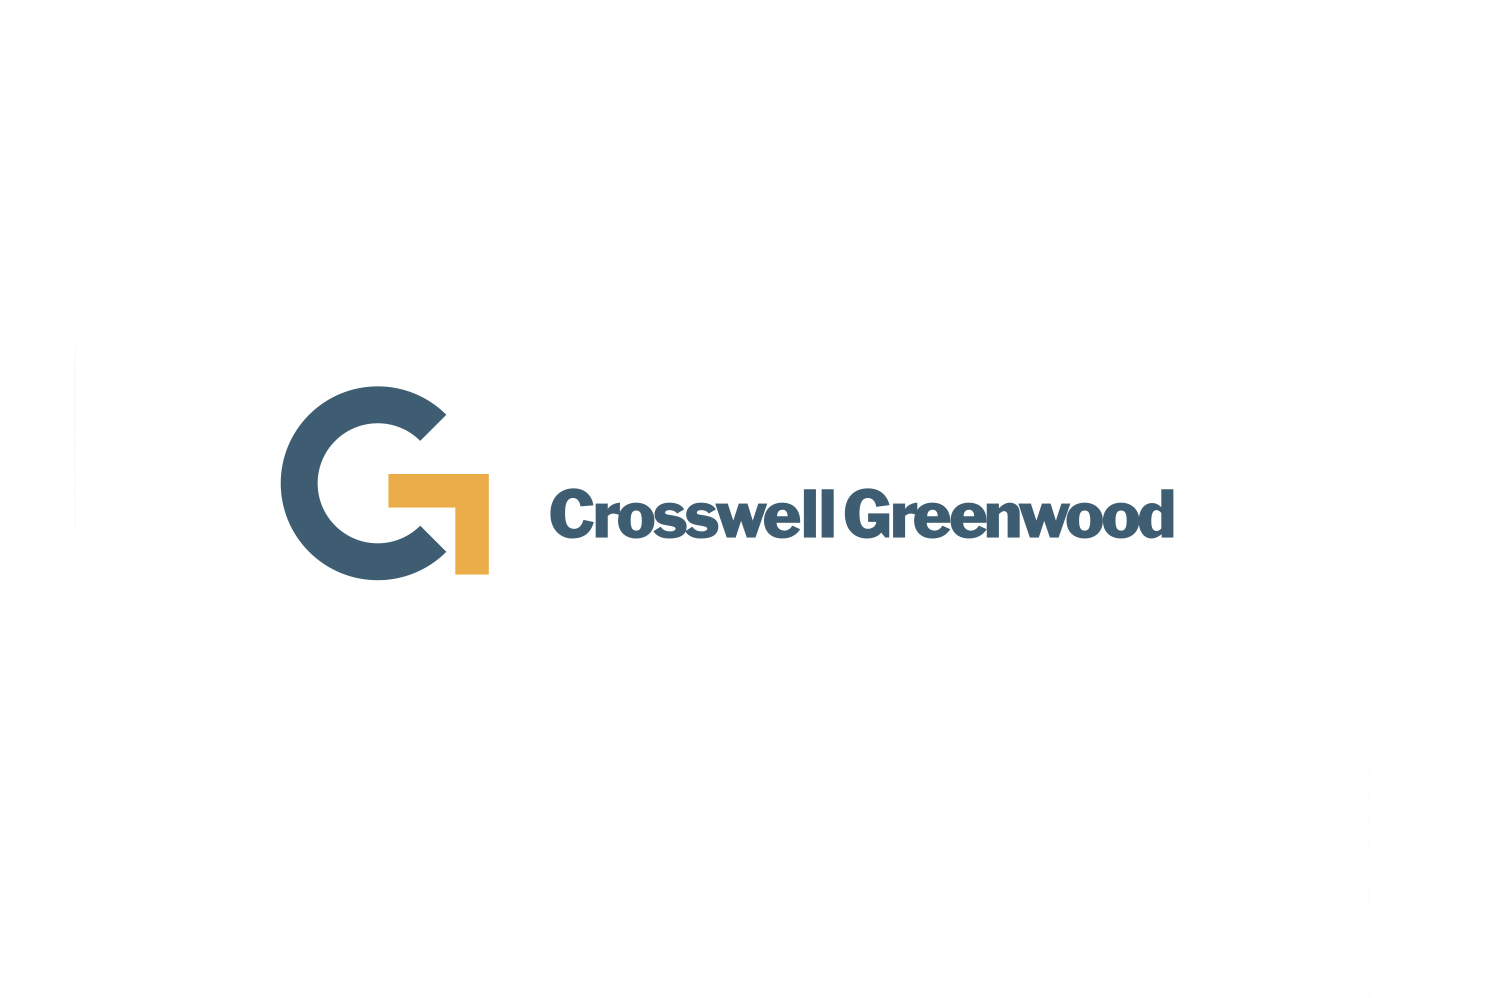 Crosswell Greenwood